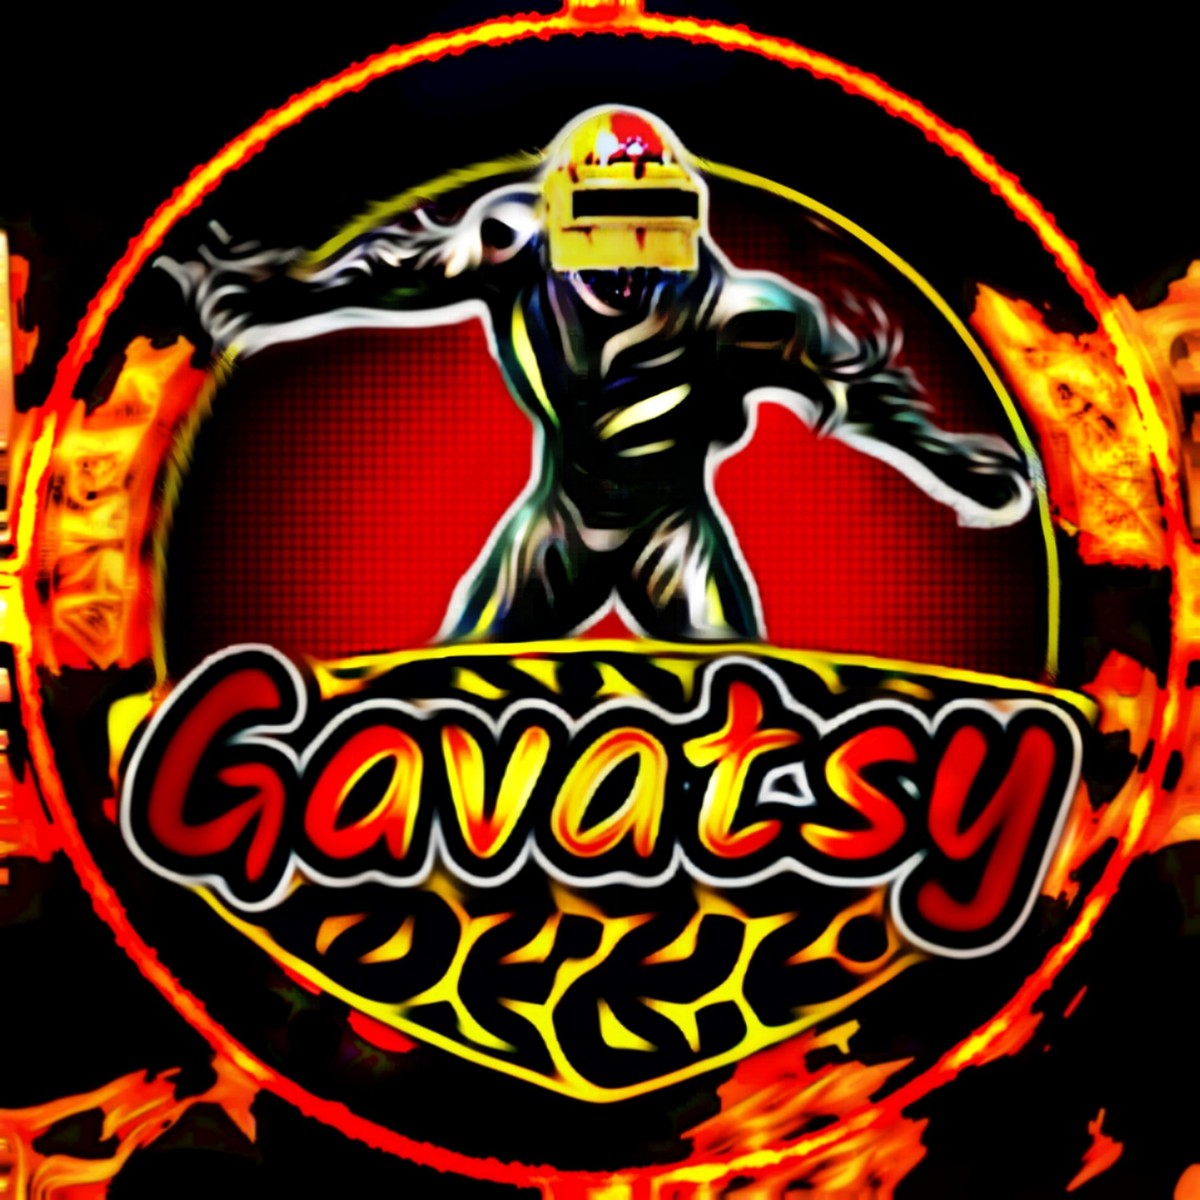 Gavatsy